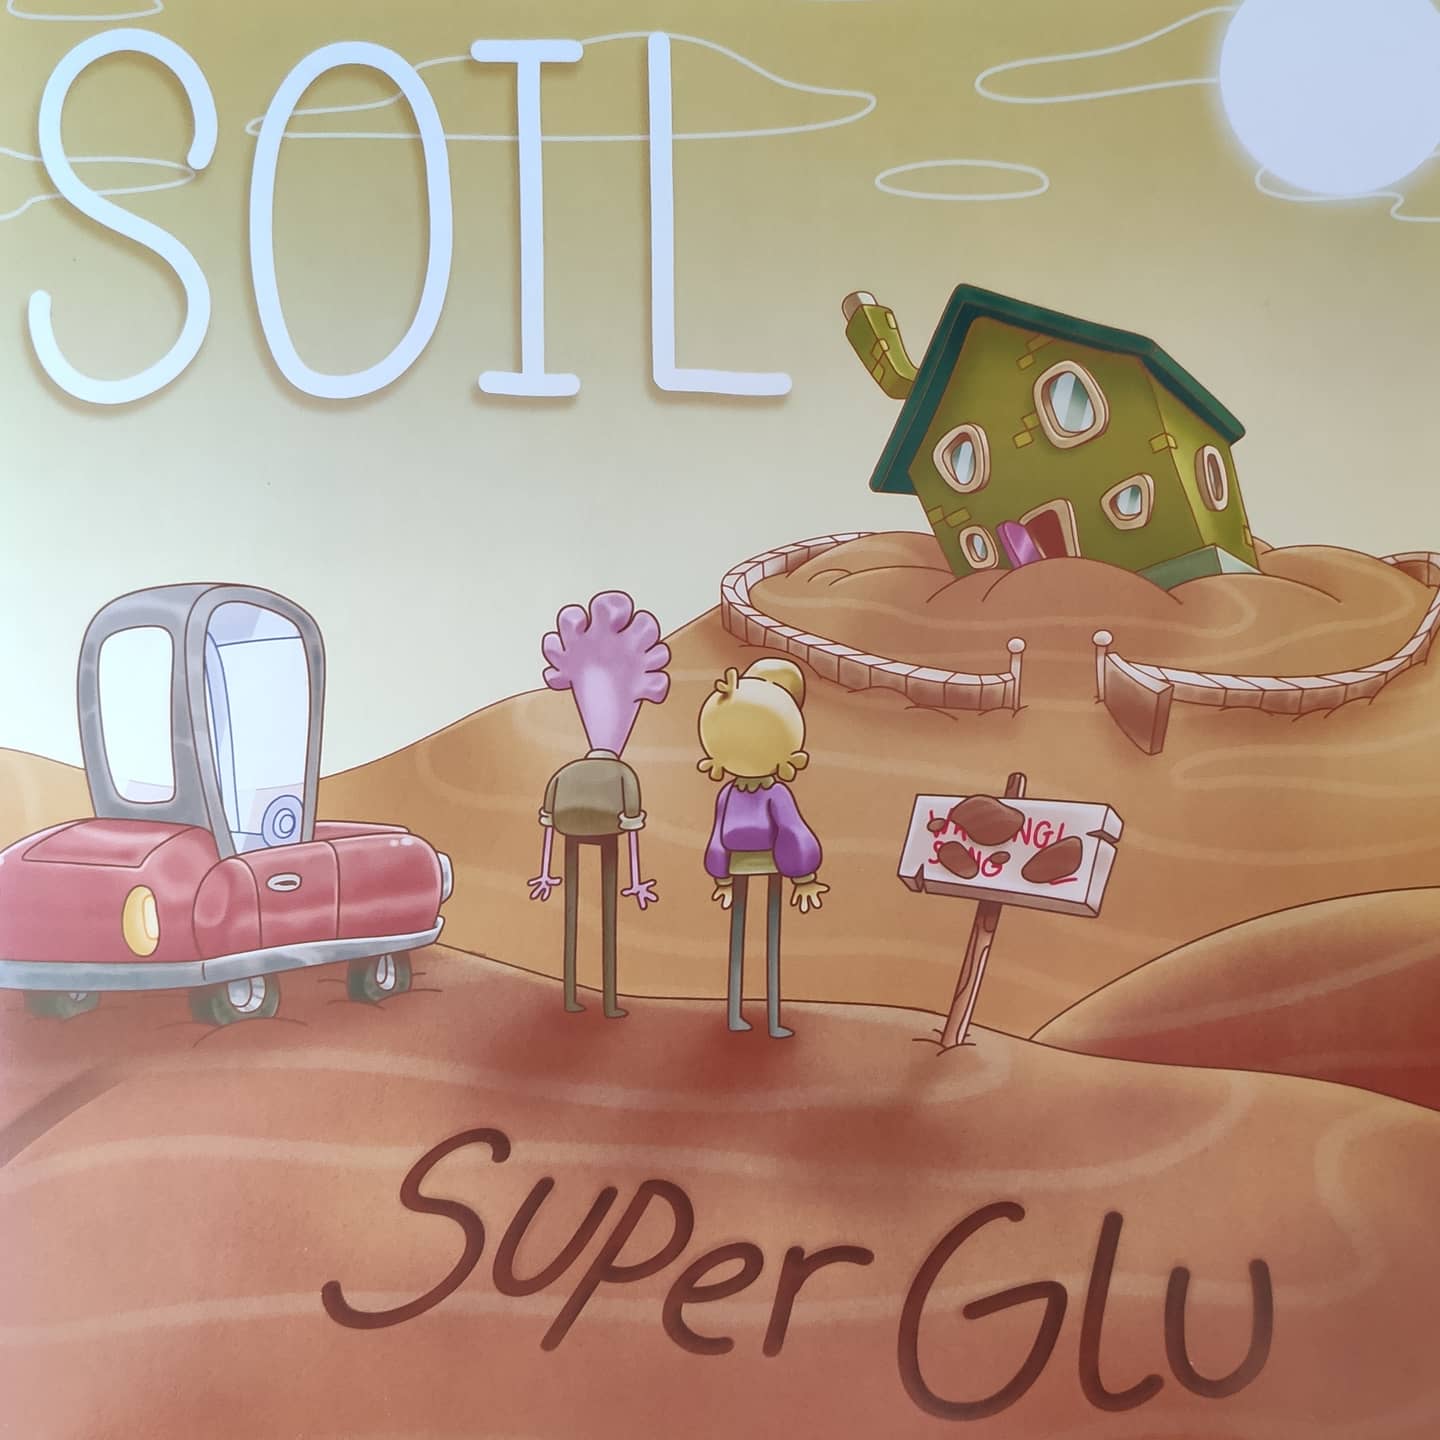 SuperGlu - Soil/Forever Endeavour